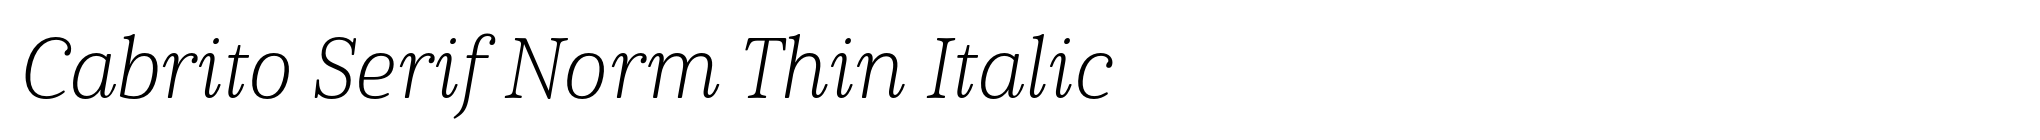 Cabrito Serif Norm Thin Italic image